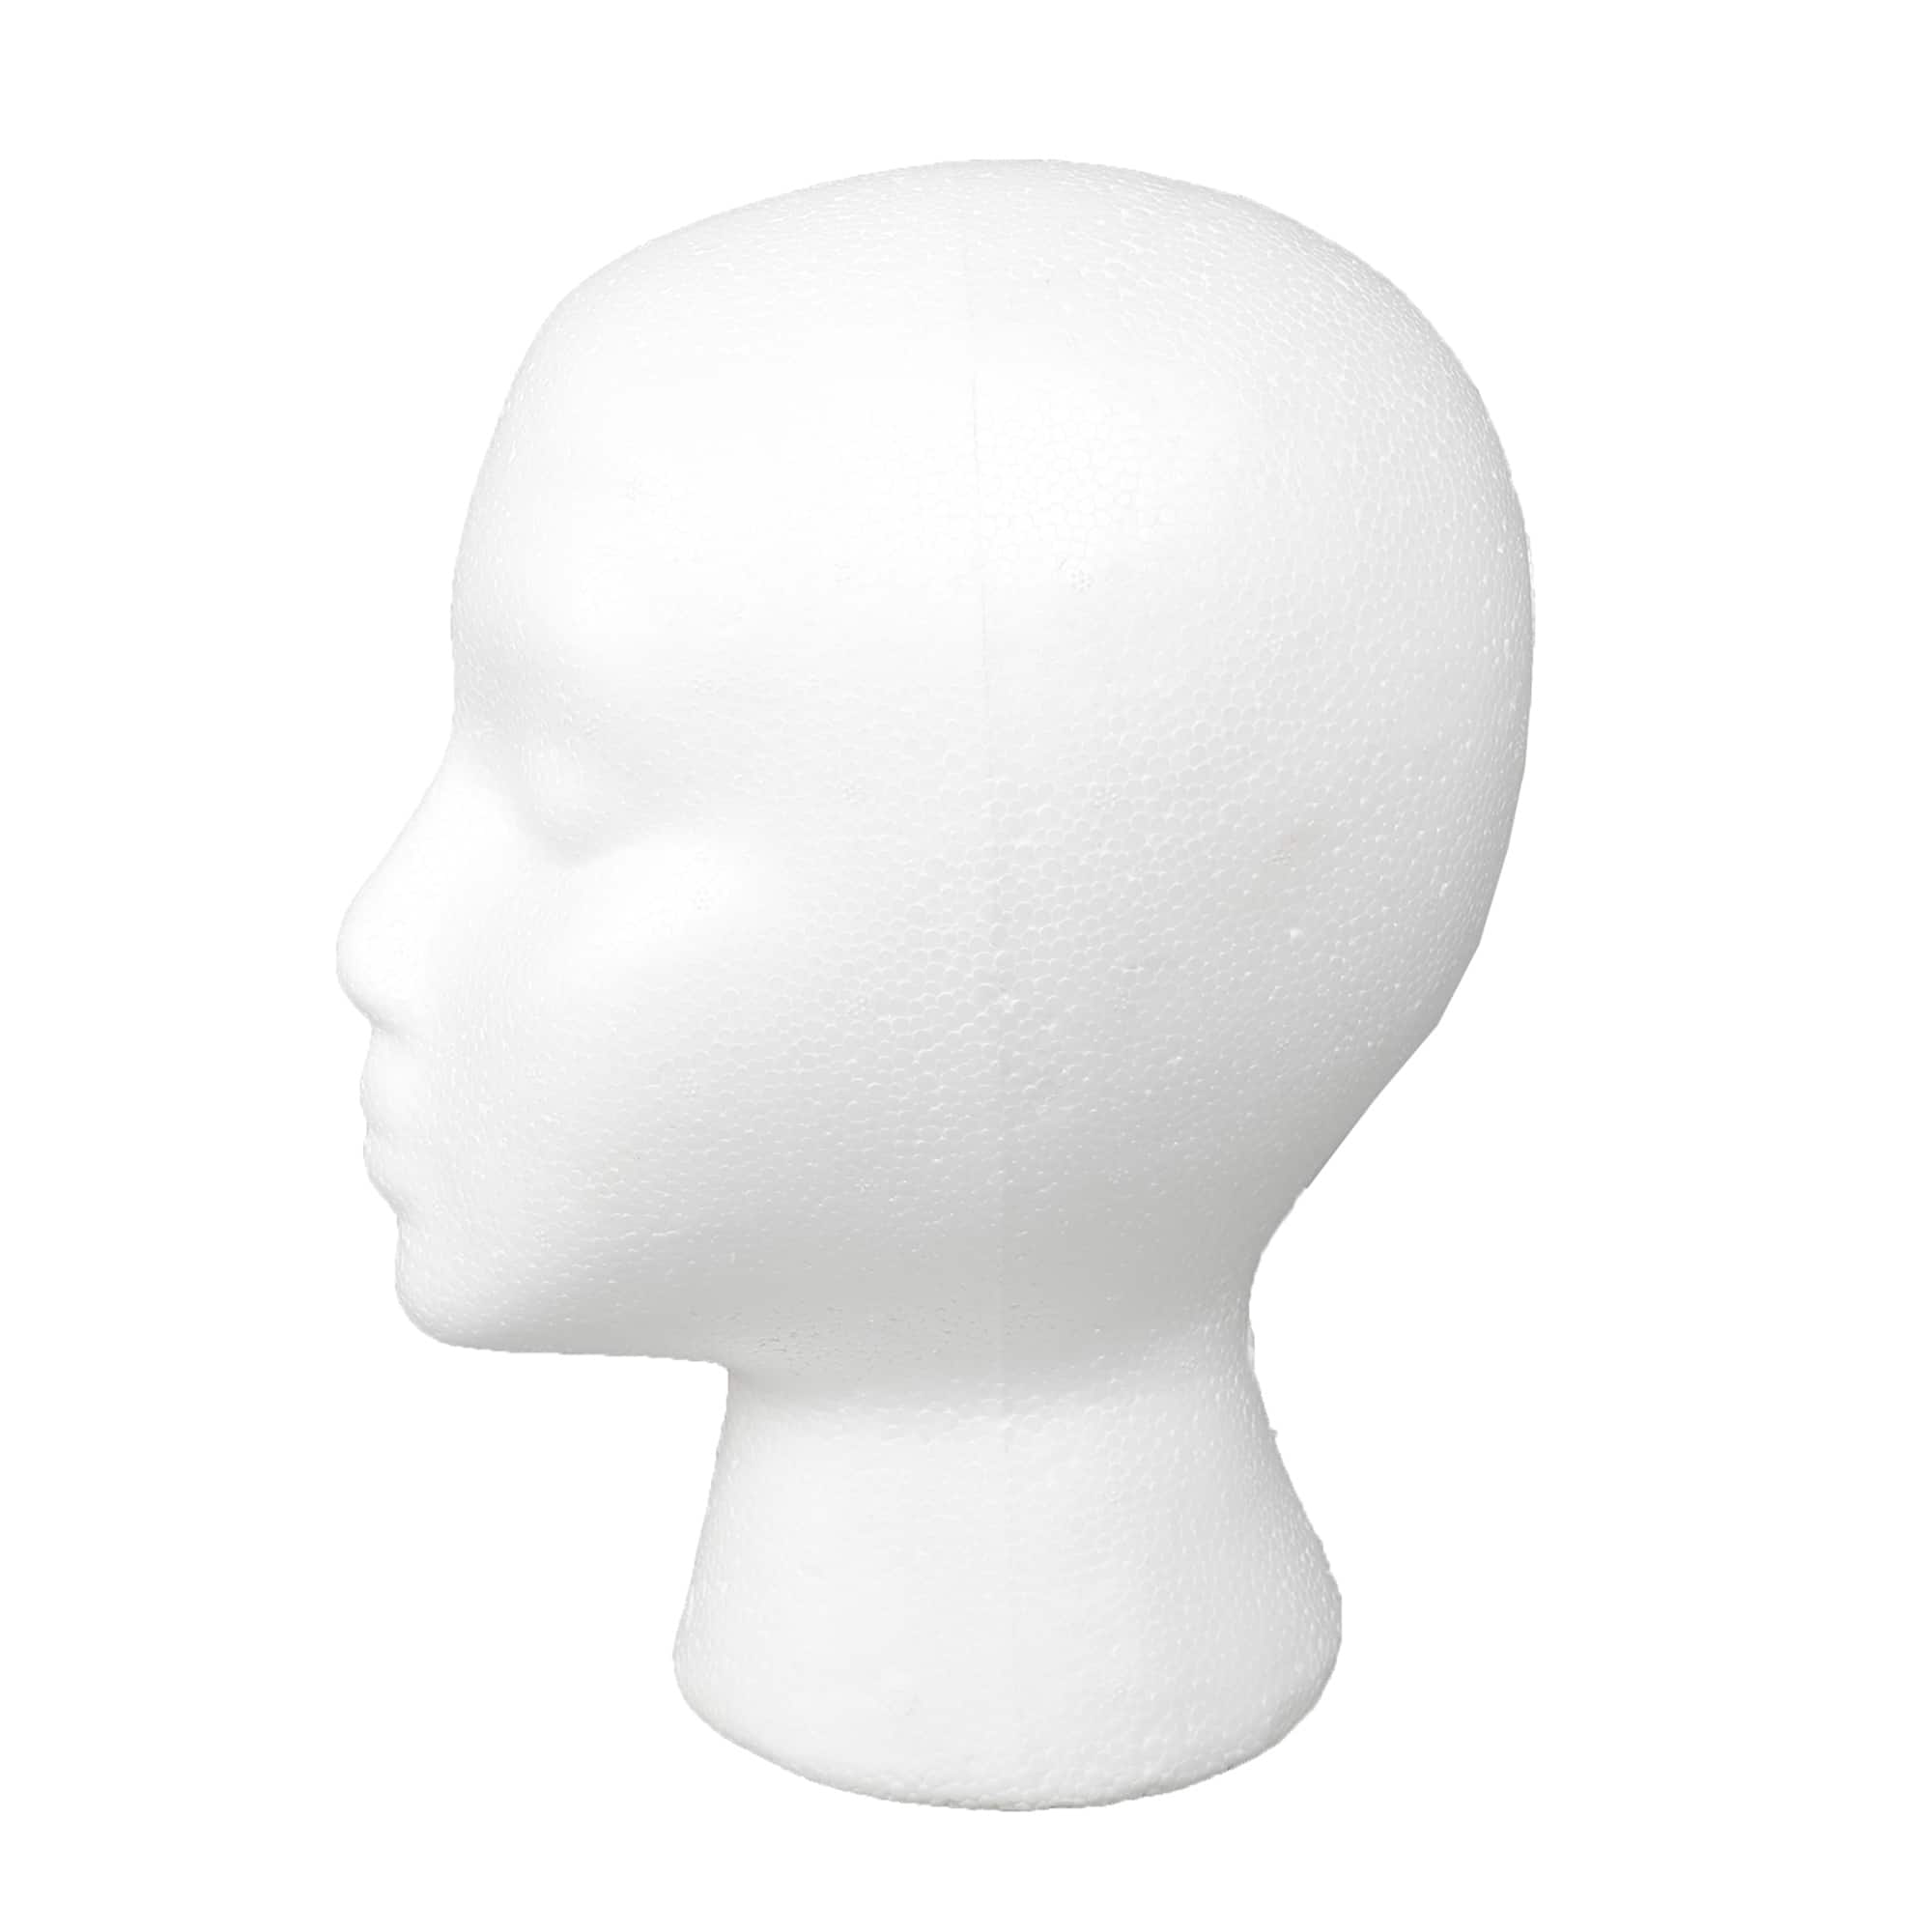 Fashion Mannequin Doll Wig Head - Doll Head - Sticker